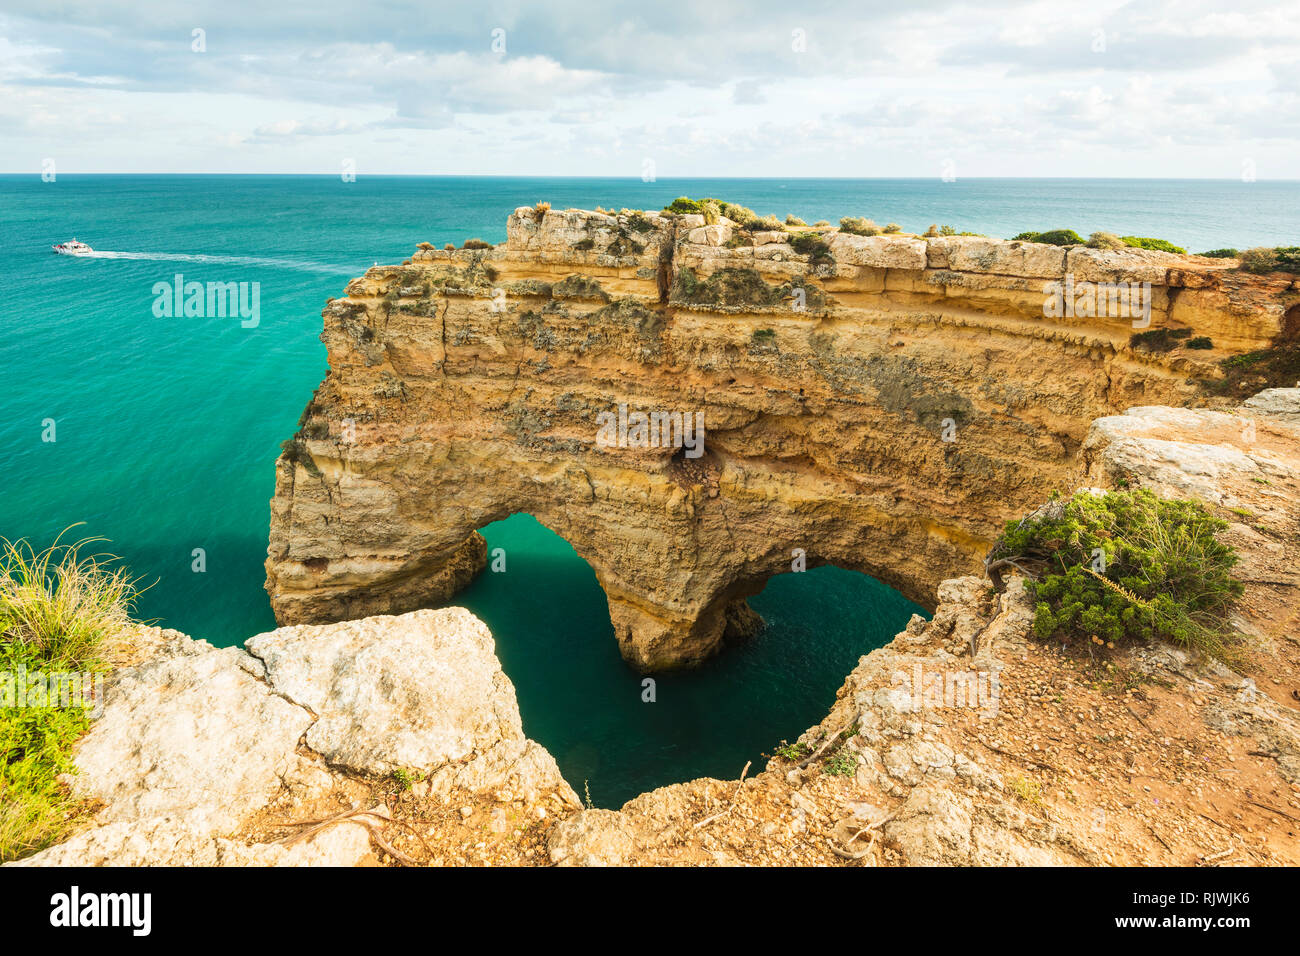 Arches naturelles sous les falaises accidentées, Praia da Marinha, Algarve, Portugal, Europe Banque D'Images